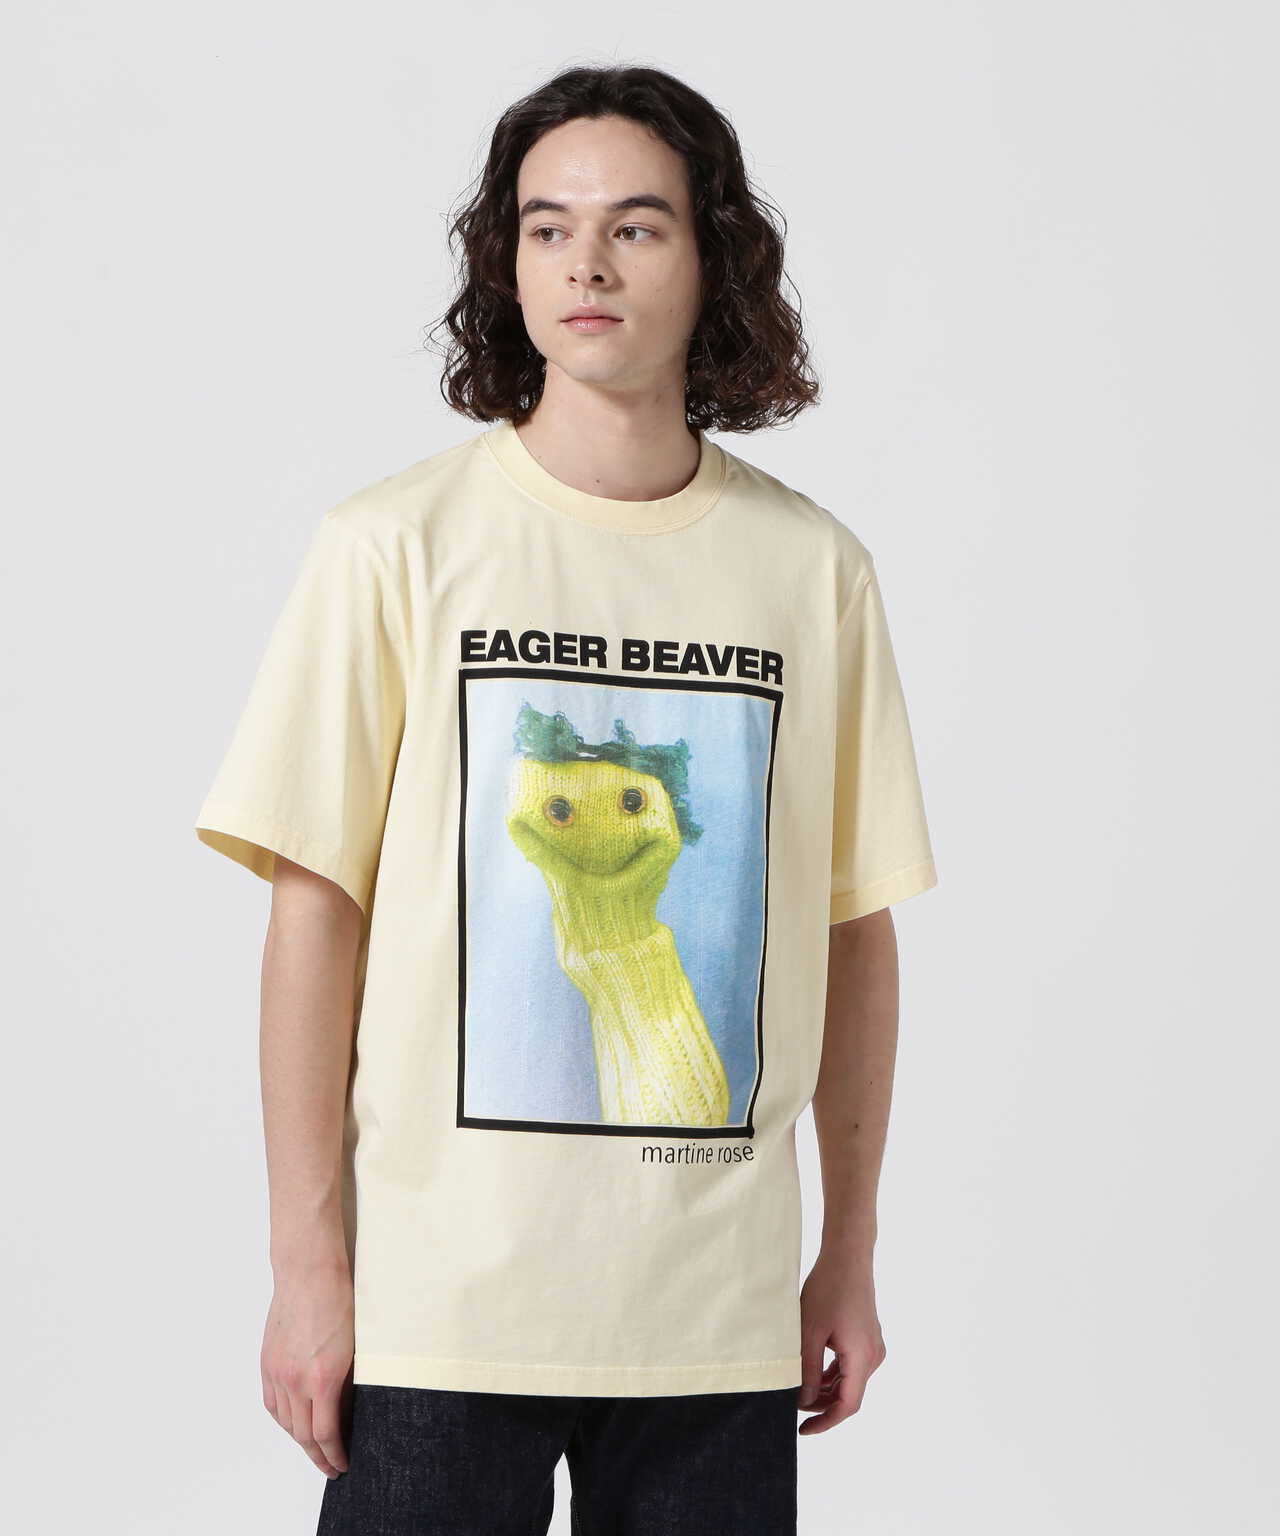 Men's Eager Beaver T-shirt by Martine Rose